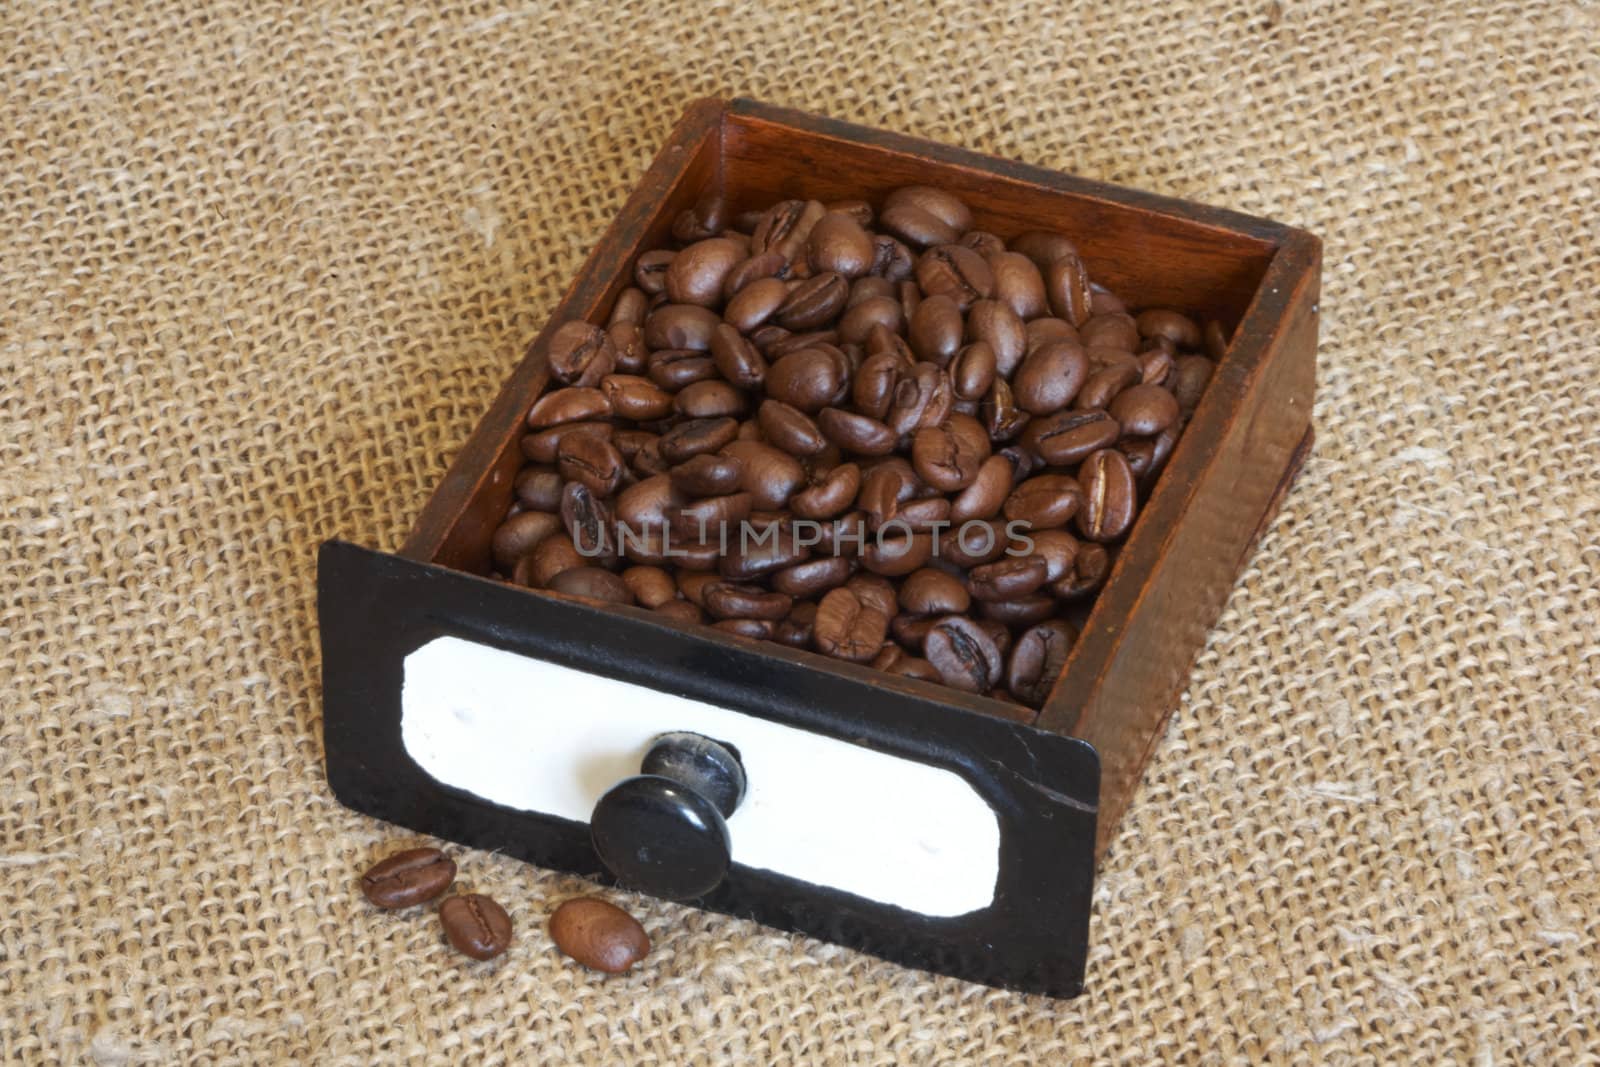 Coffee-grinder by petrkurgan